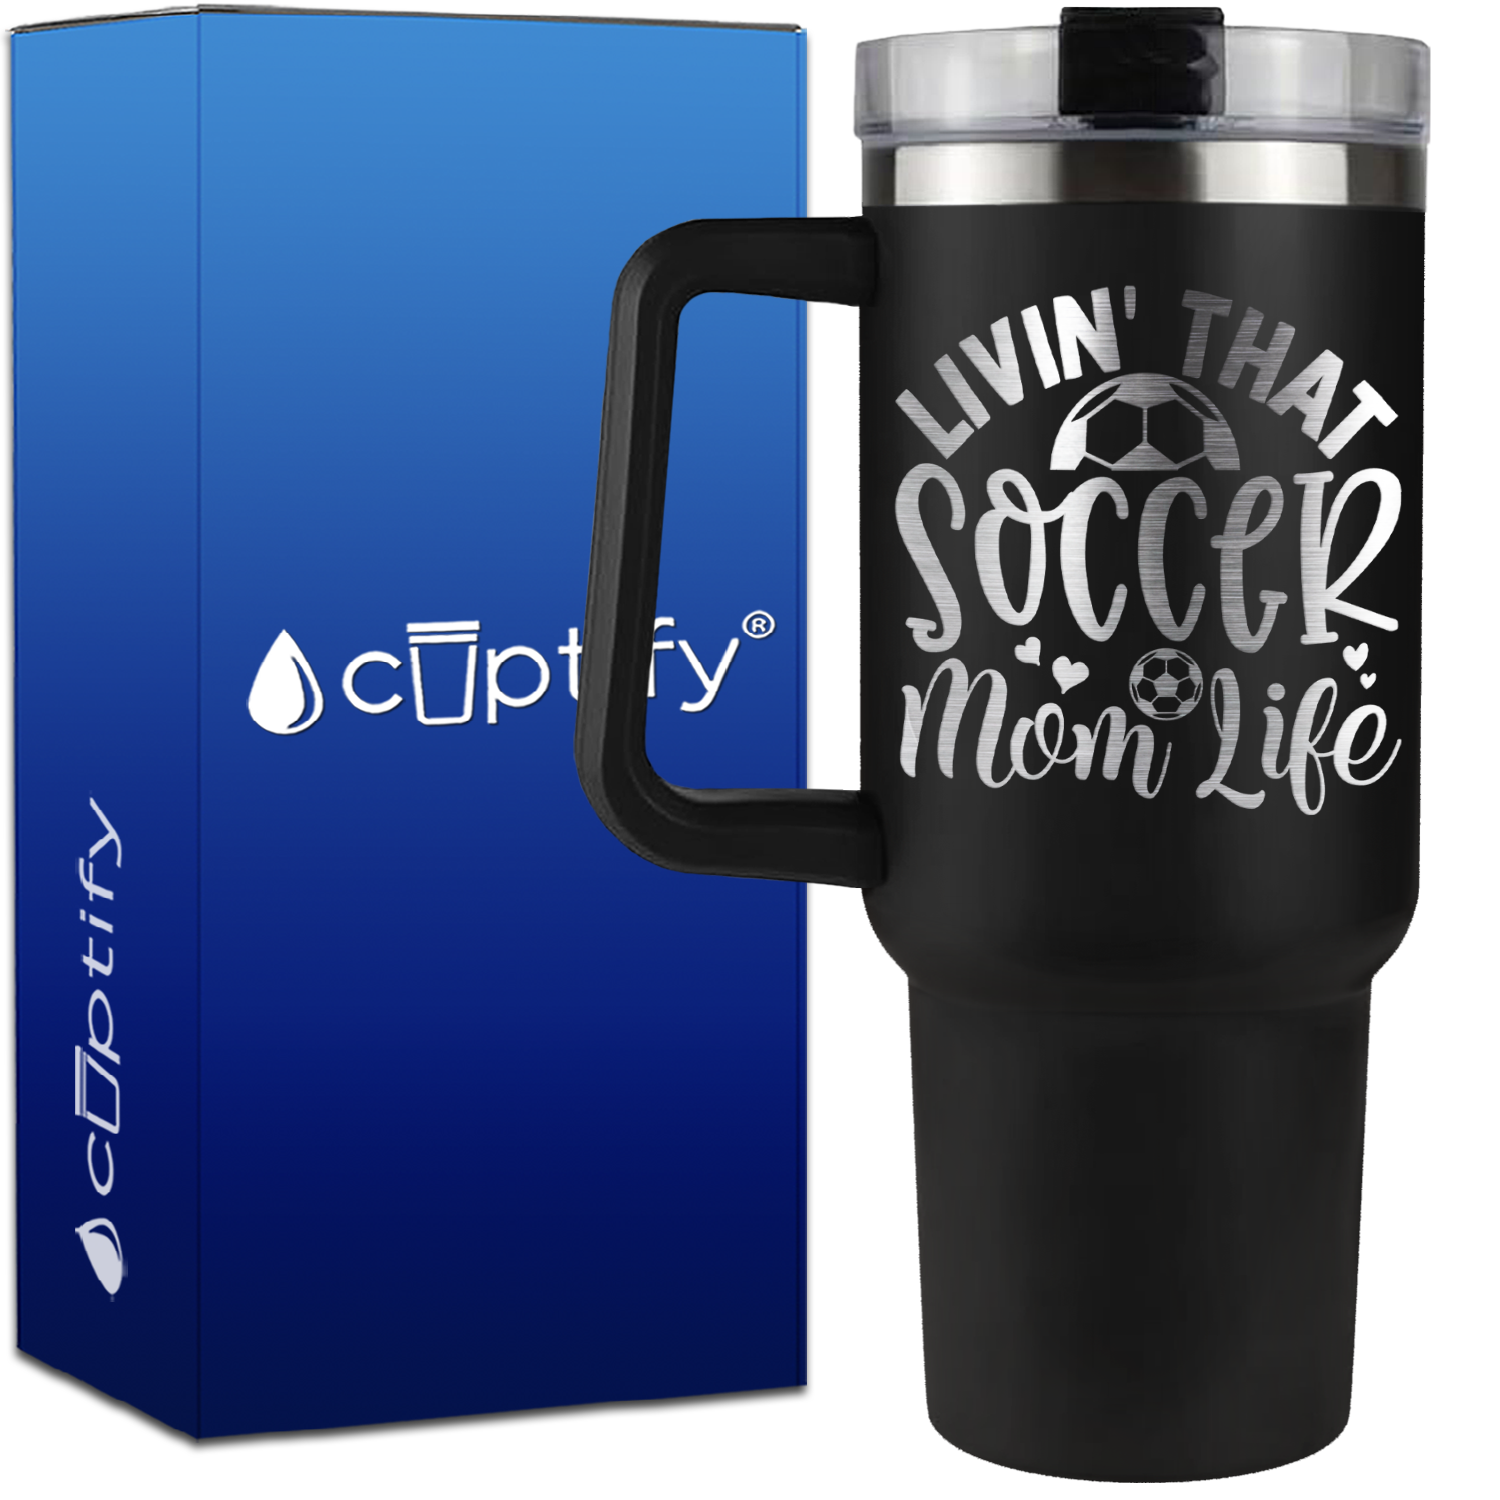 Livin' that Soccer Mom Life Hearts and Ball on 40oz Soccer Traveler Mug